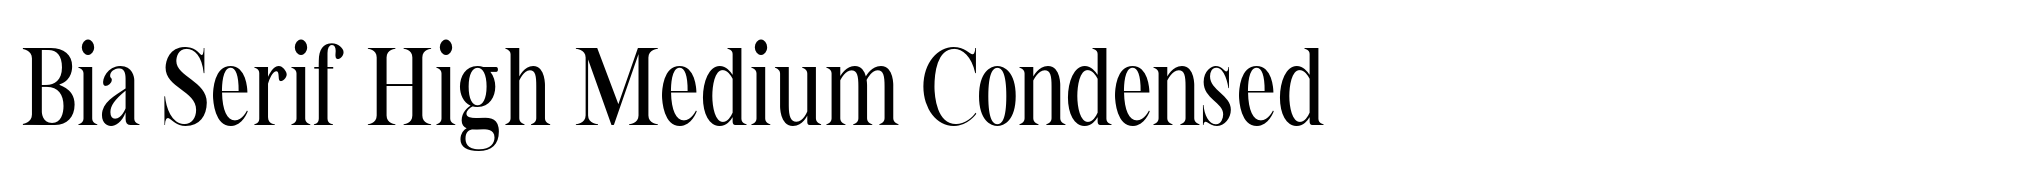 Bia Serif High Medium Condensed image